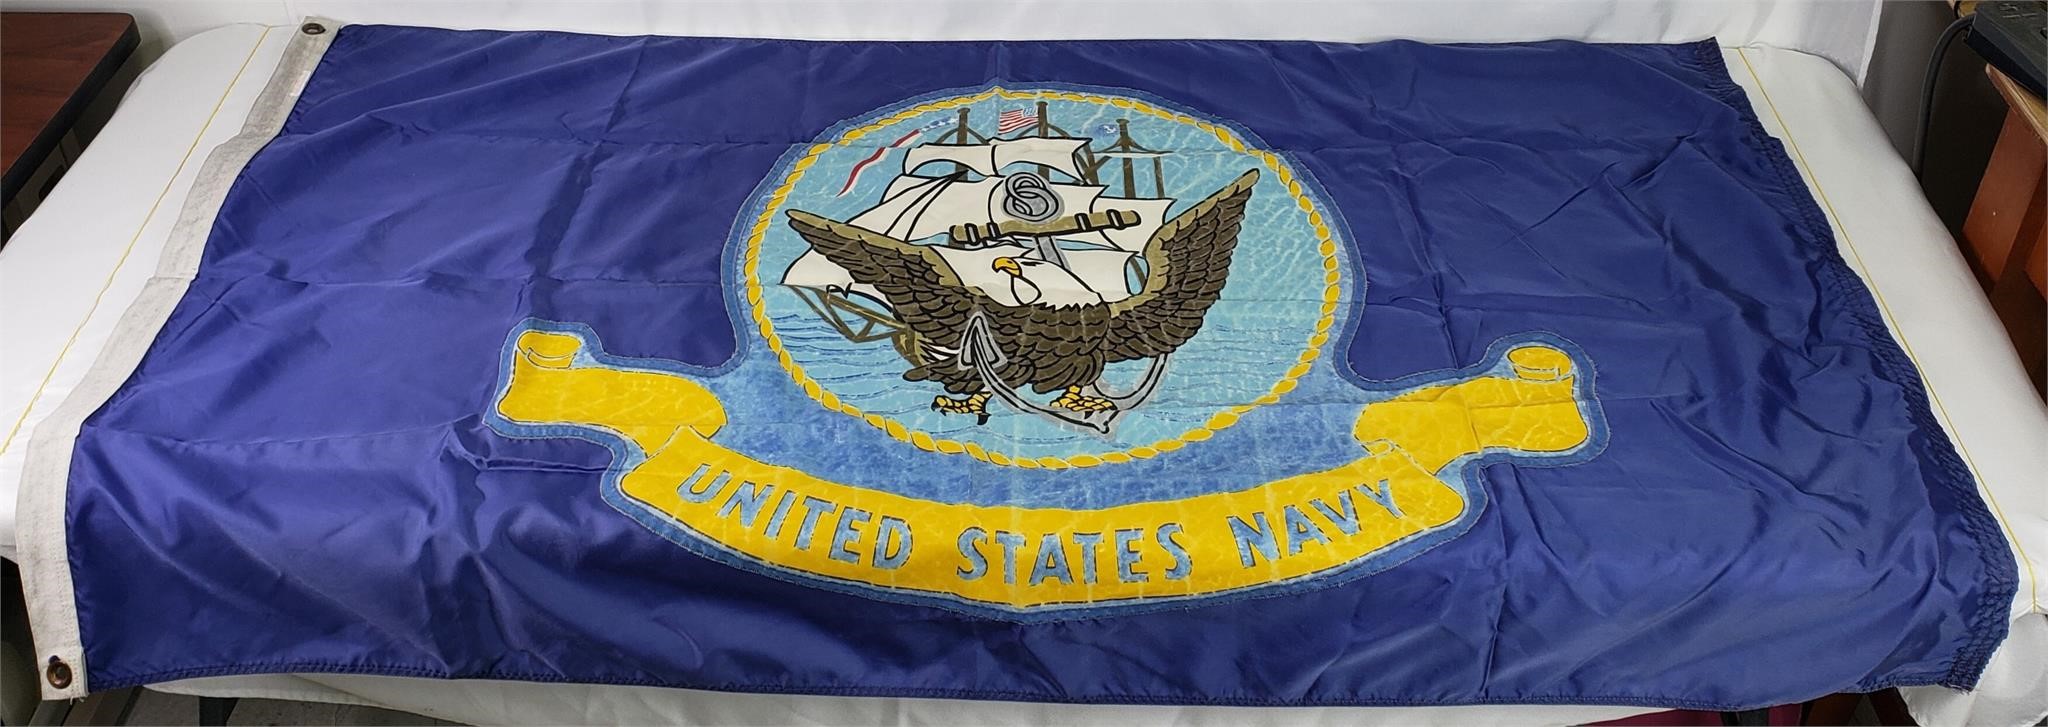 United States Navy Flag